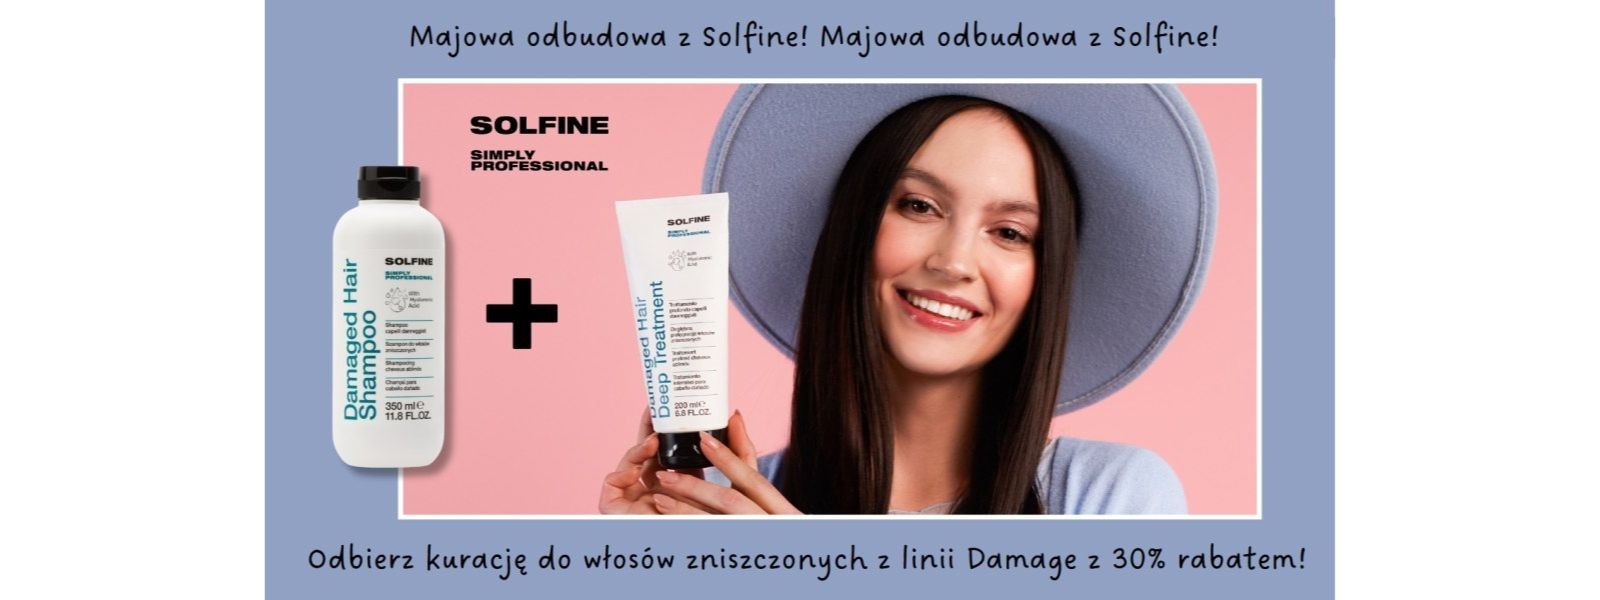 Promocja Solfine